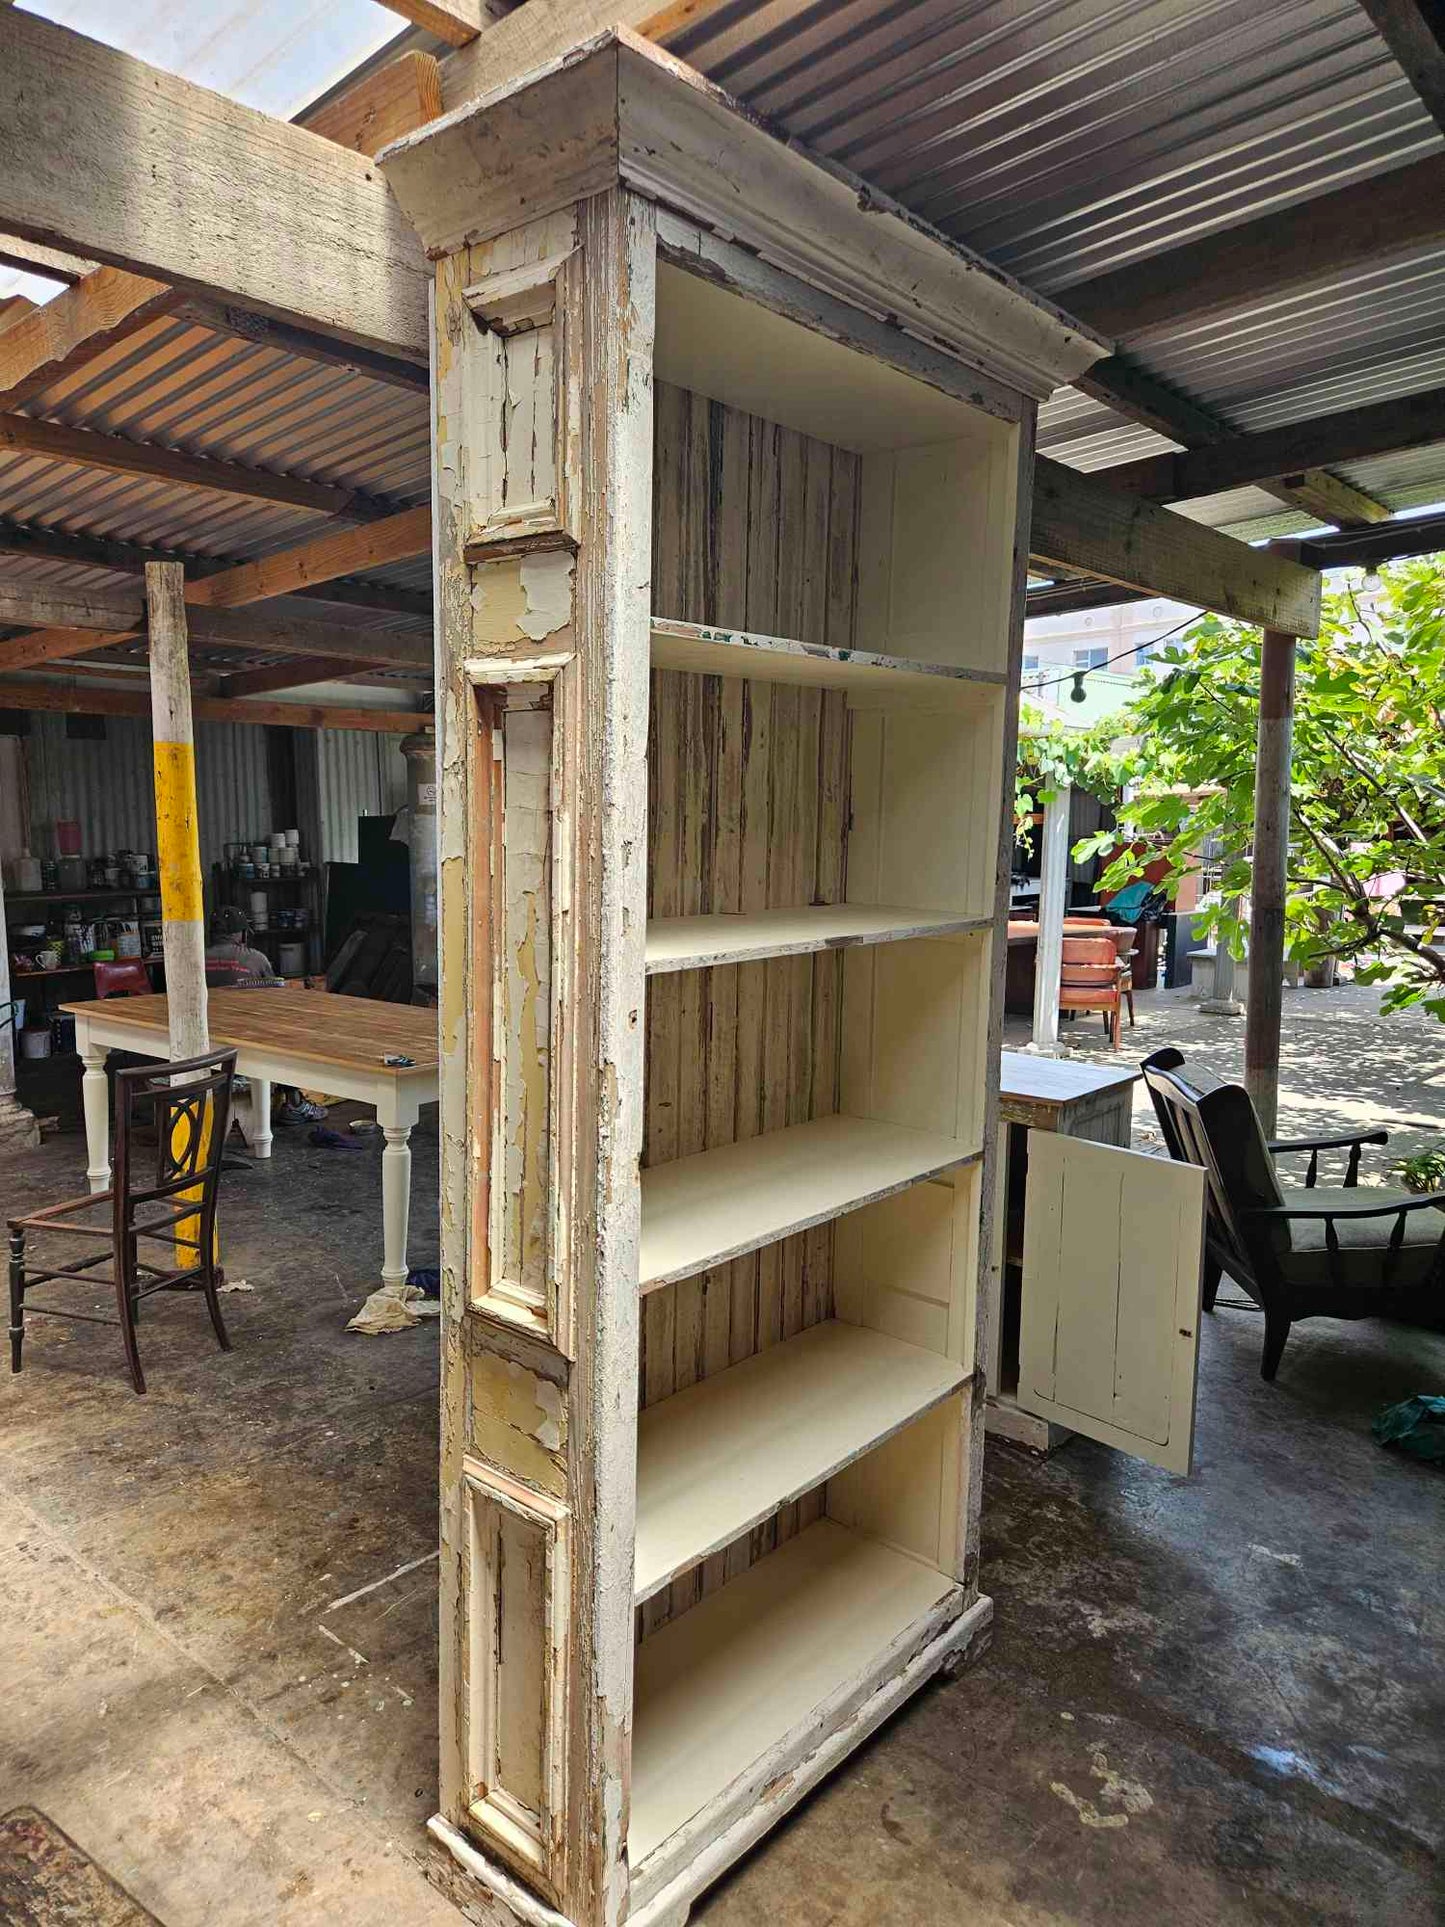 Tall rustic bookshelf